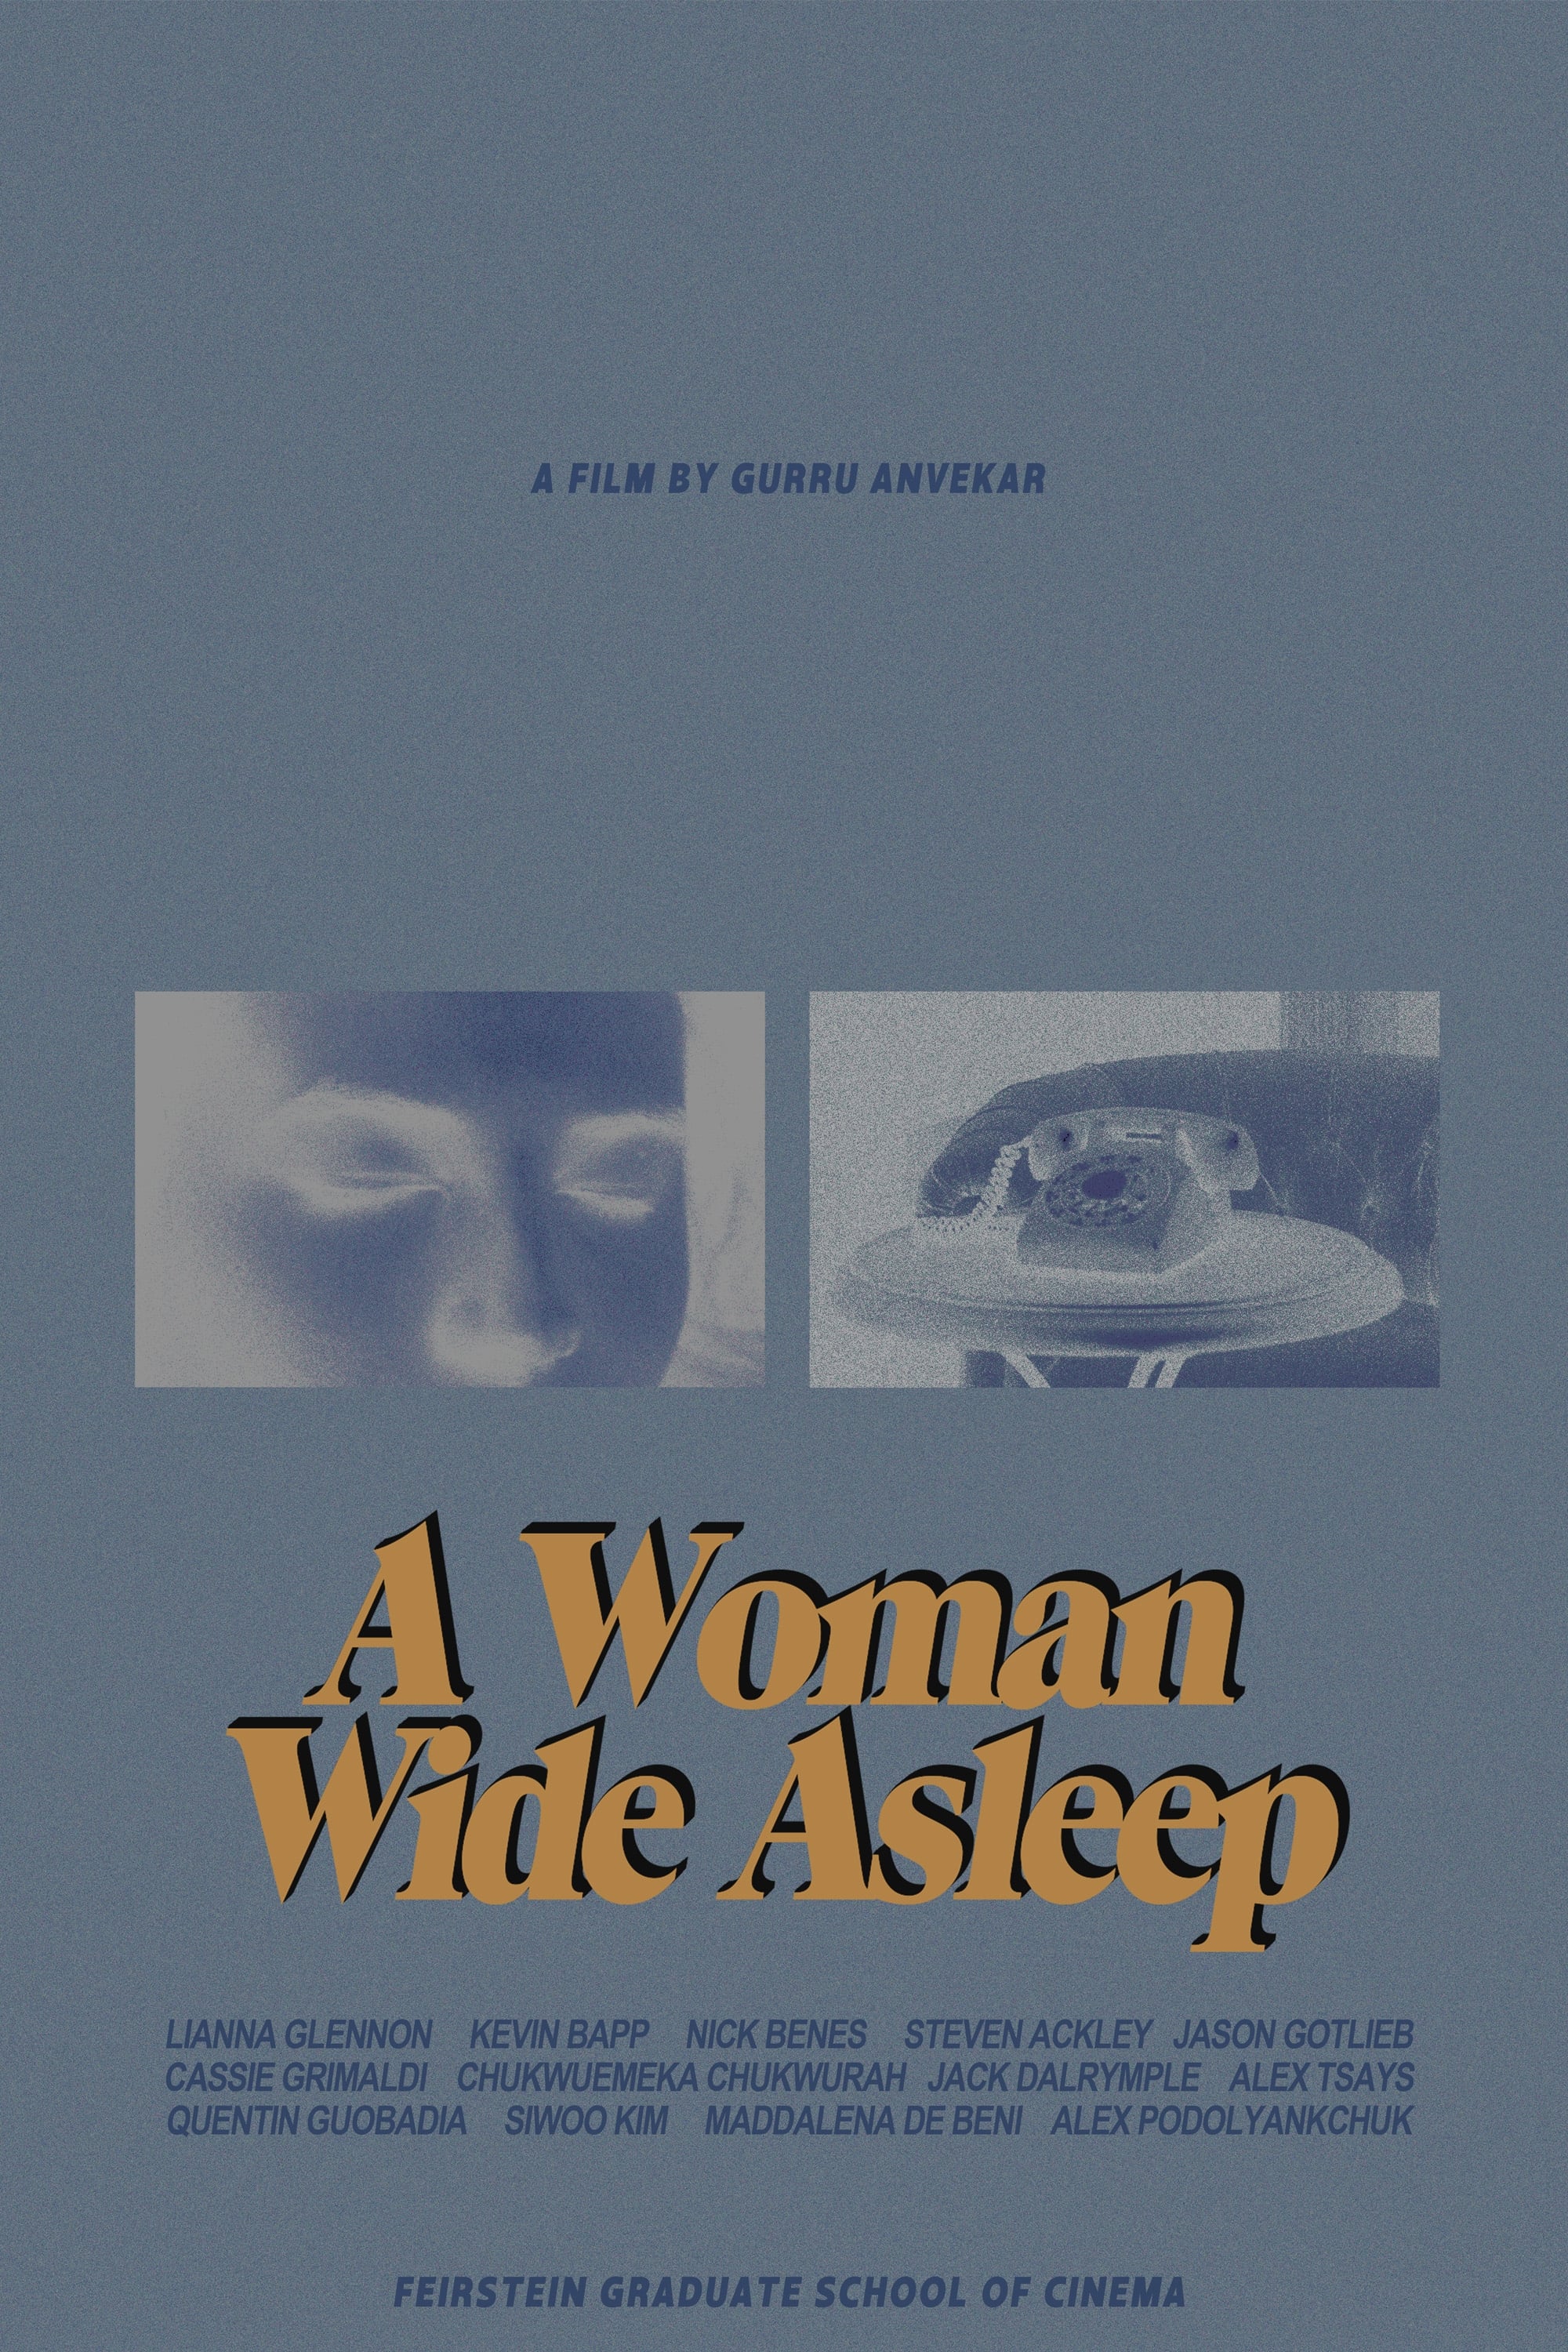 A Woman Wide Asleep